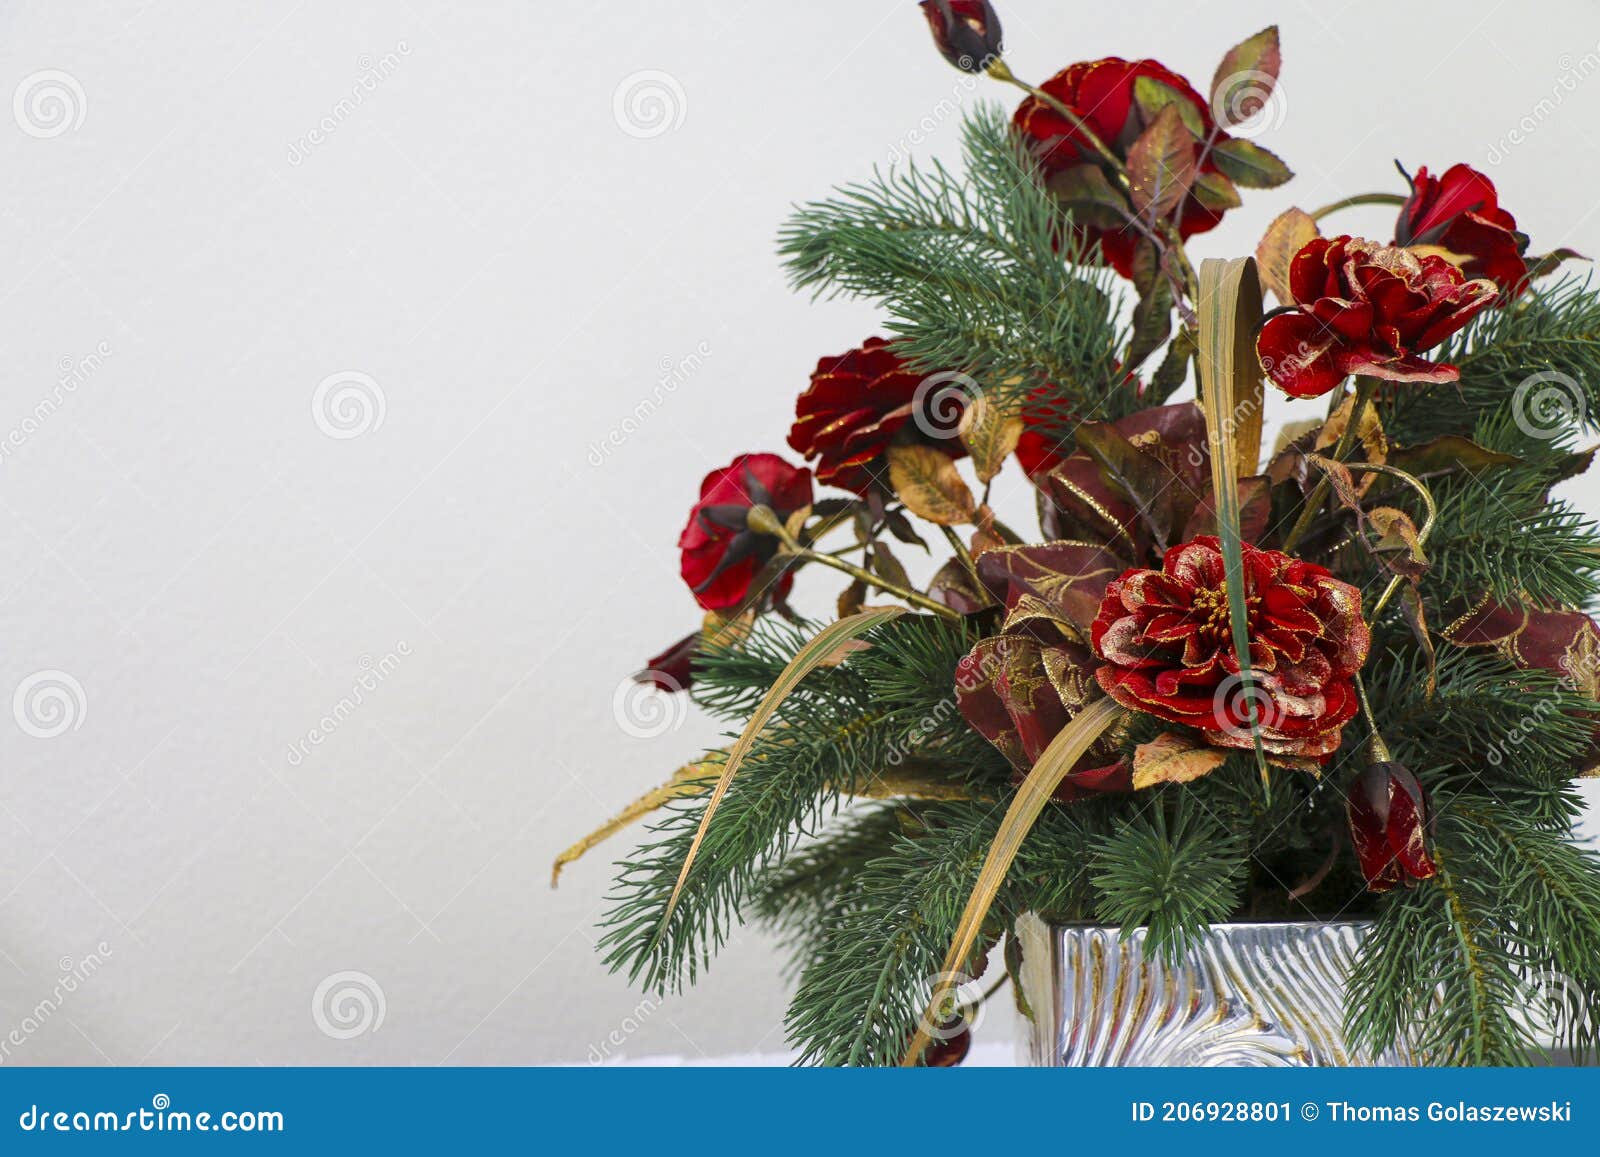 Um Buquê De Flores De Natal De Flores Vermelhas E Sofisticadas Com Ramos De  árvores De Natal. Imagem de Stock - Imagem de feriado, lifestyle: 206928801